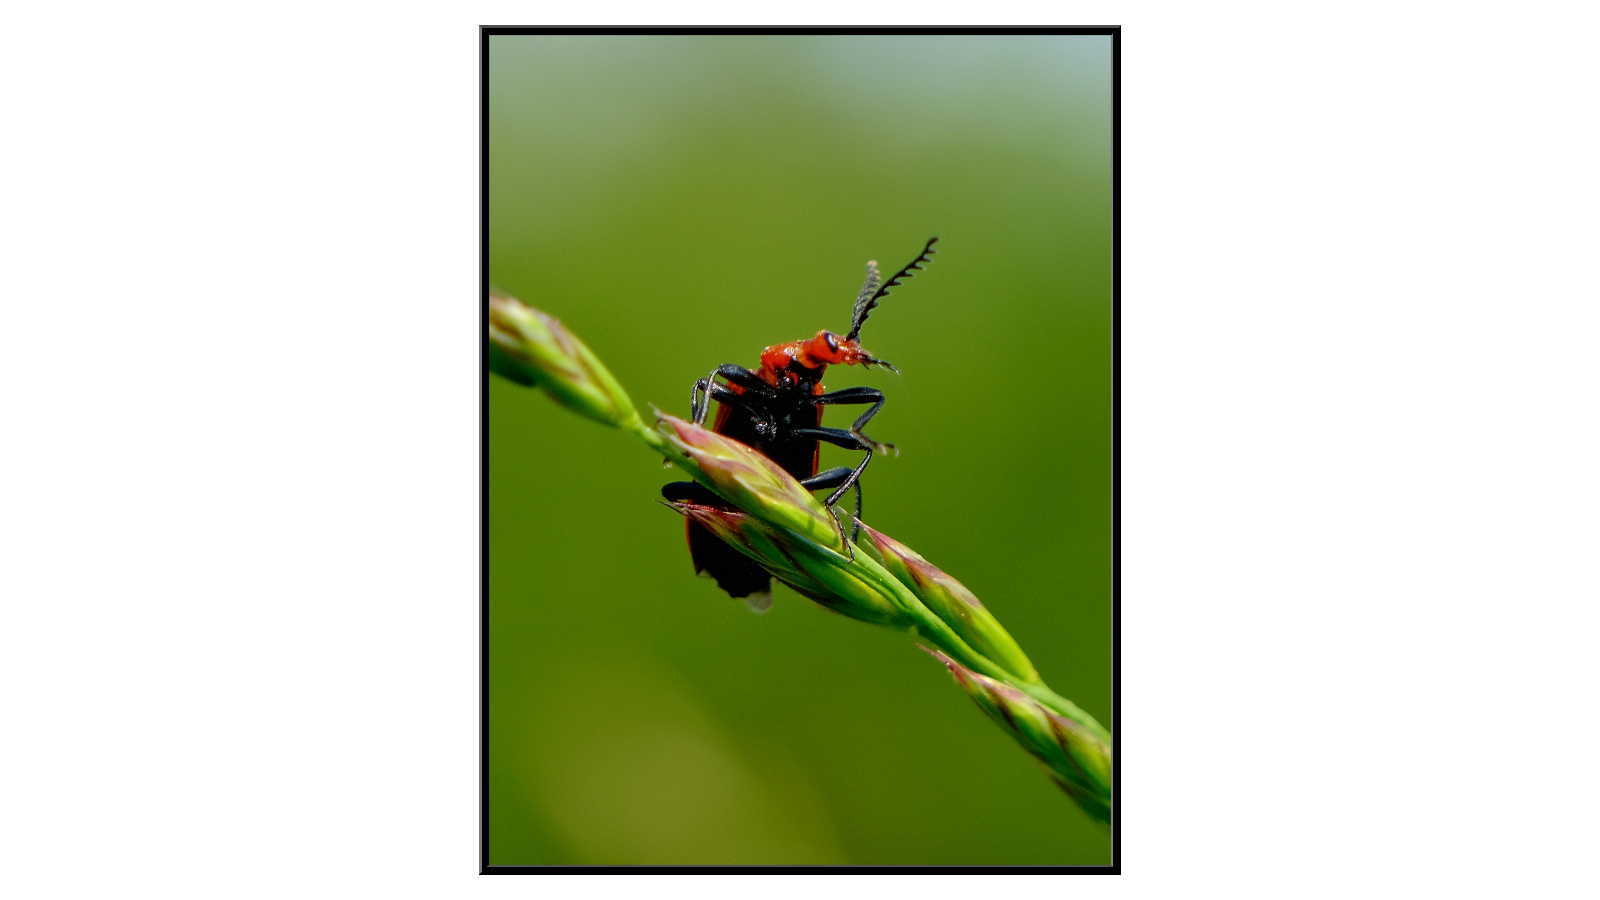 Beetle looking around